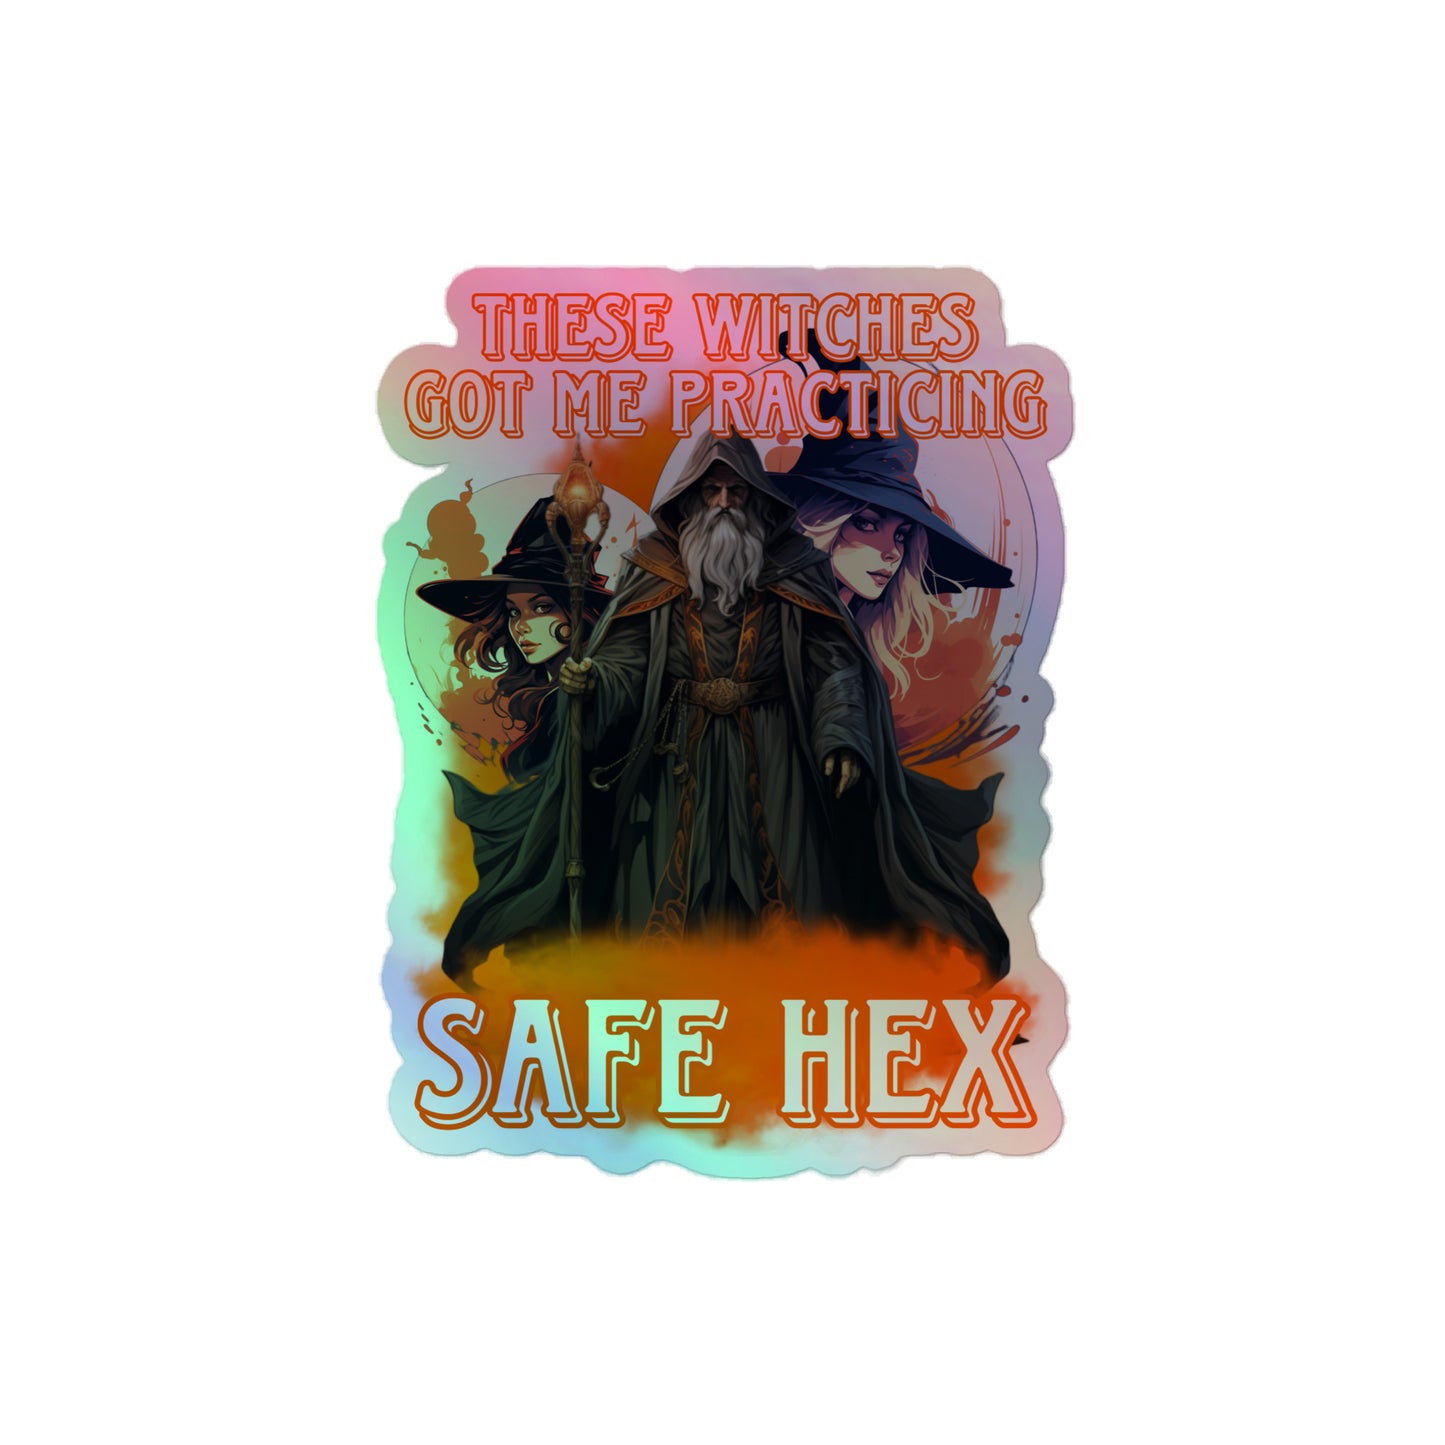 Safe hex (sticker)